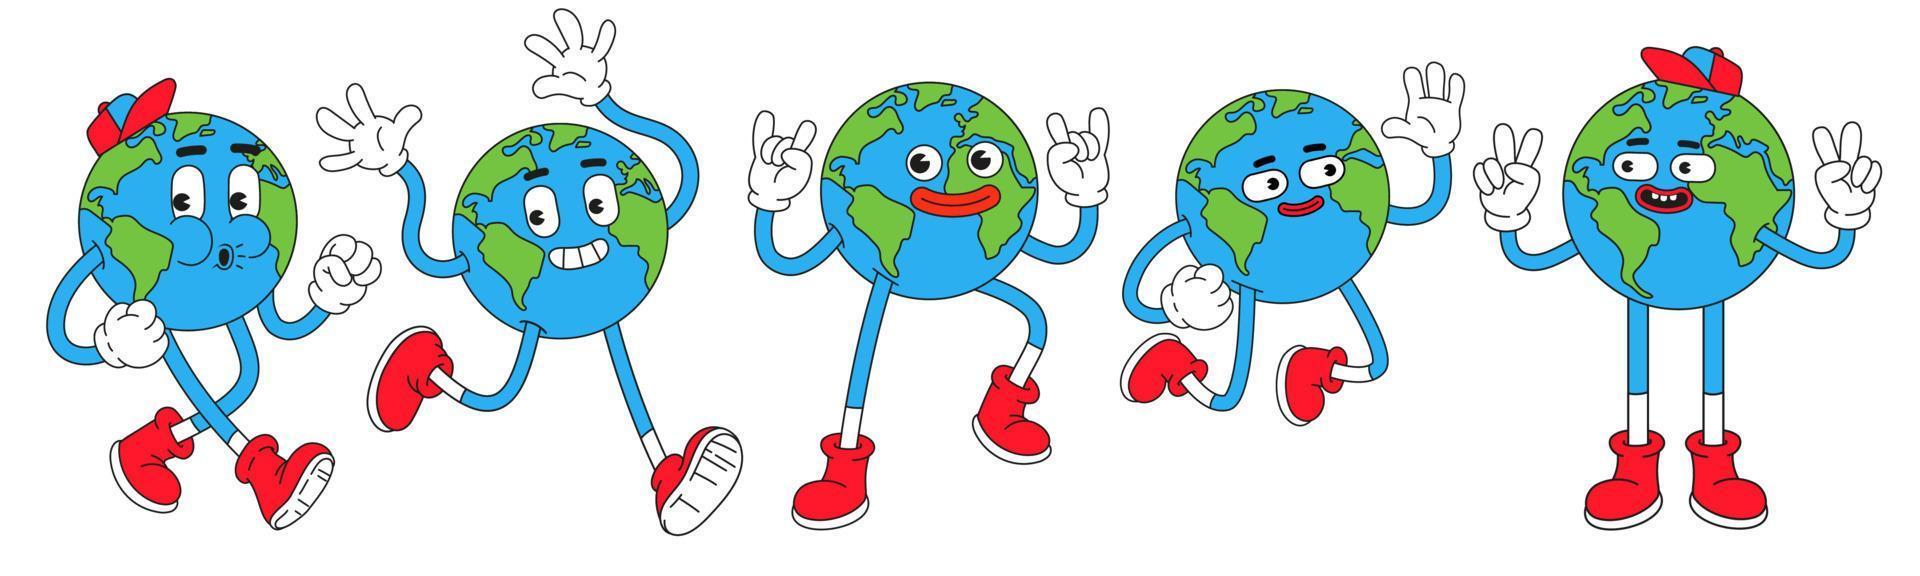 personajes de la tierra en estilo de dibujos animados retro de moda. globo divertido con cara sonriente. vector